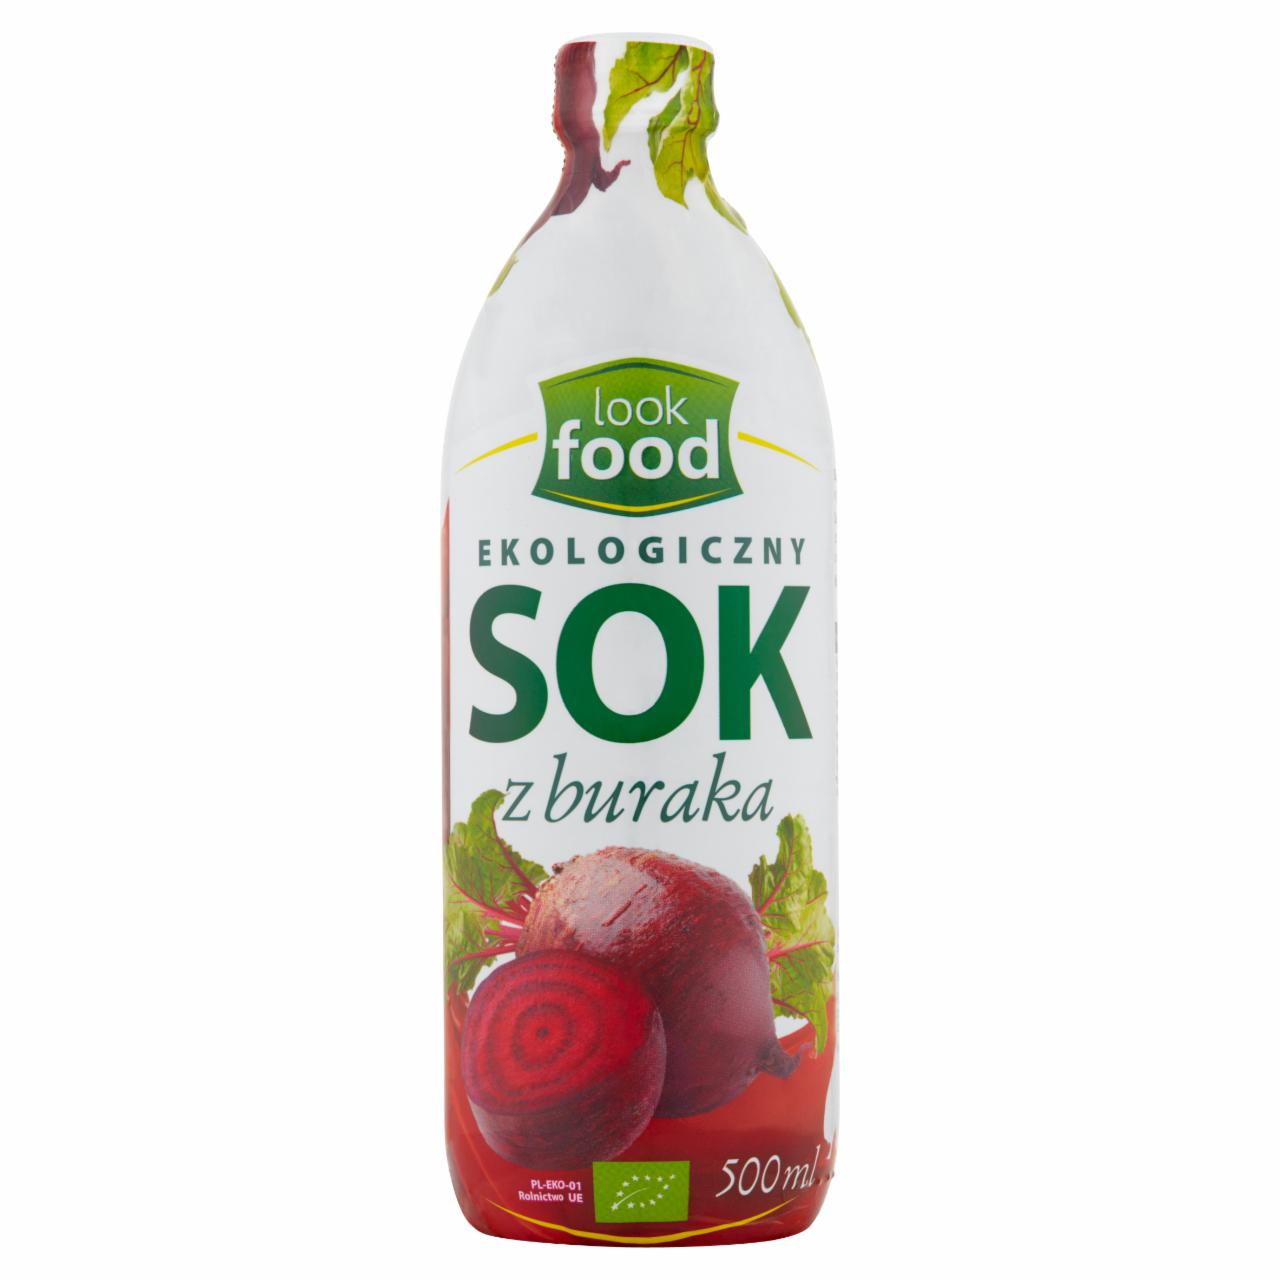 Zdjęcia - Look Food Ekologiczny sok z buraka 500 ml